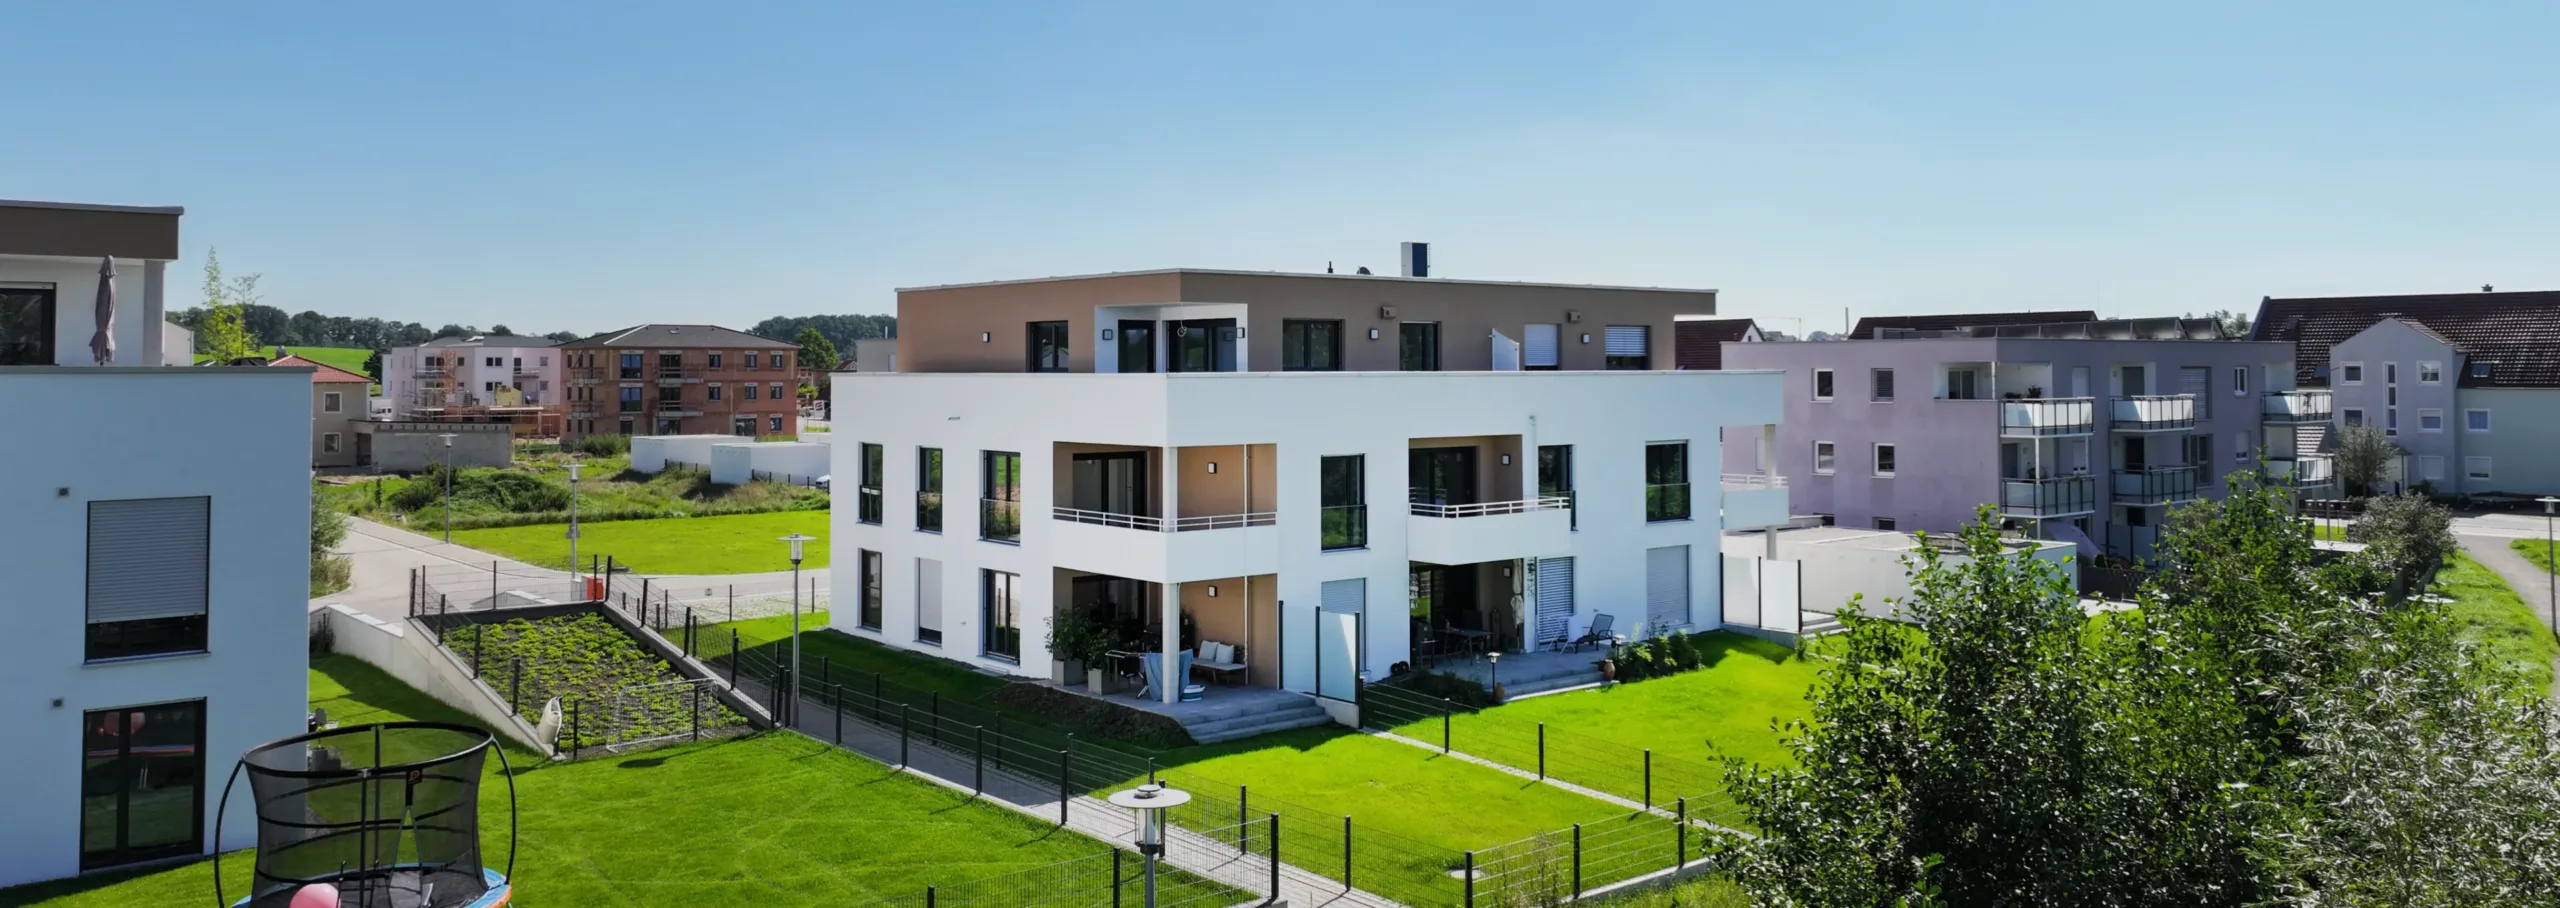 SCHICK Hausbau - Am Badgraben II - Freystadt - Fortsetzung einer Erfolgsstory